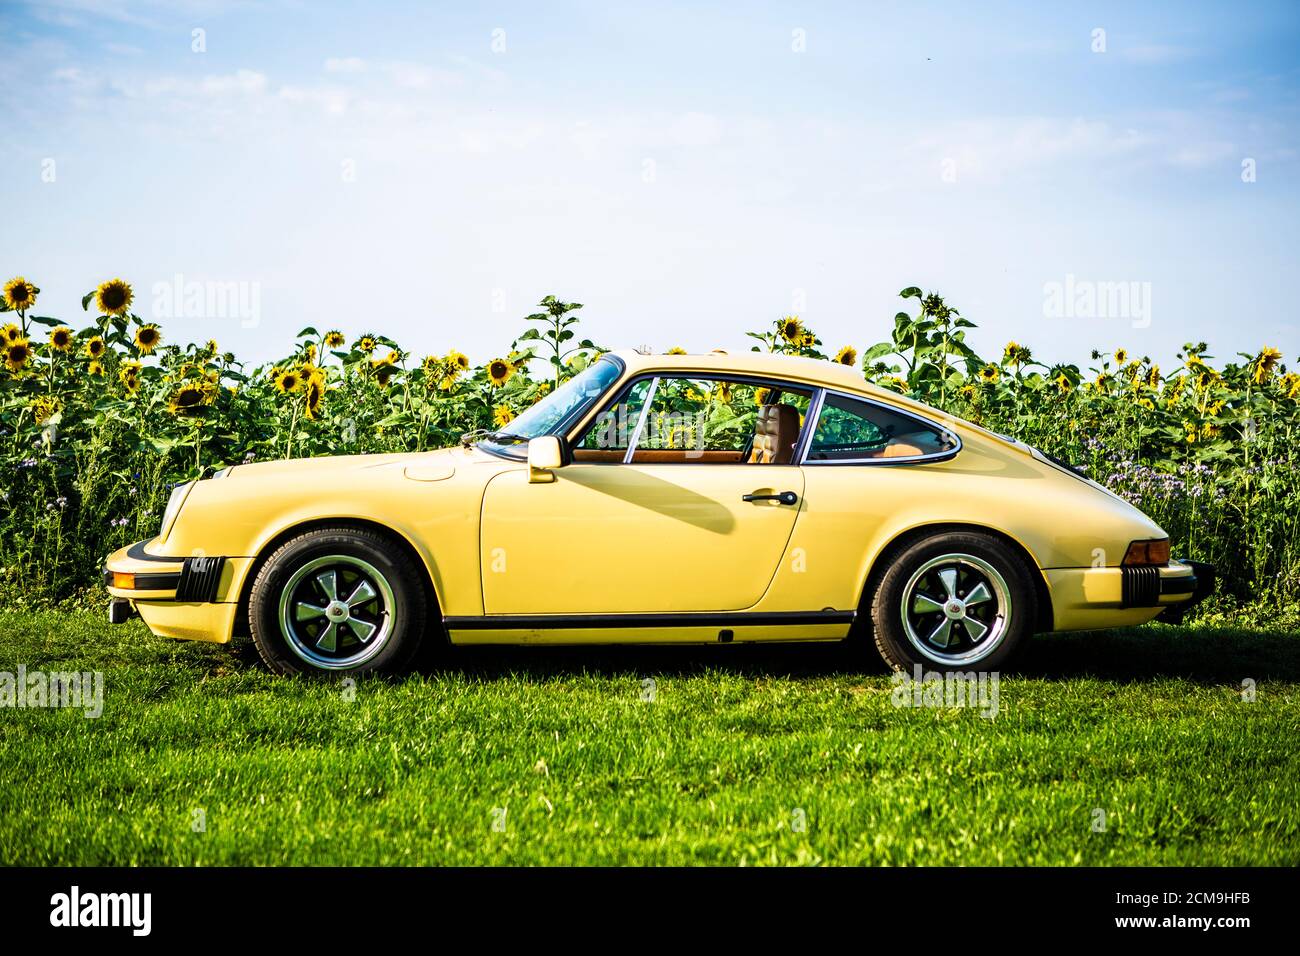 Porsche 911 2,7 S Baujahr 1977 gelb vor einem Sonnenblumenfeld Stock Photo  - Alamy